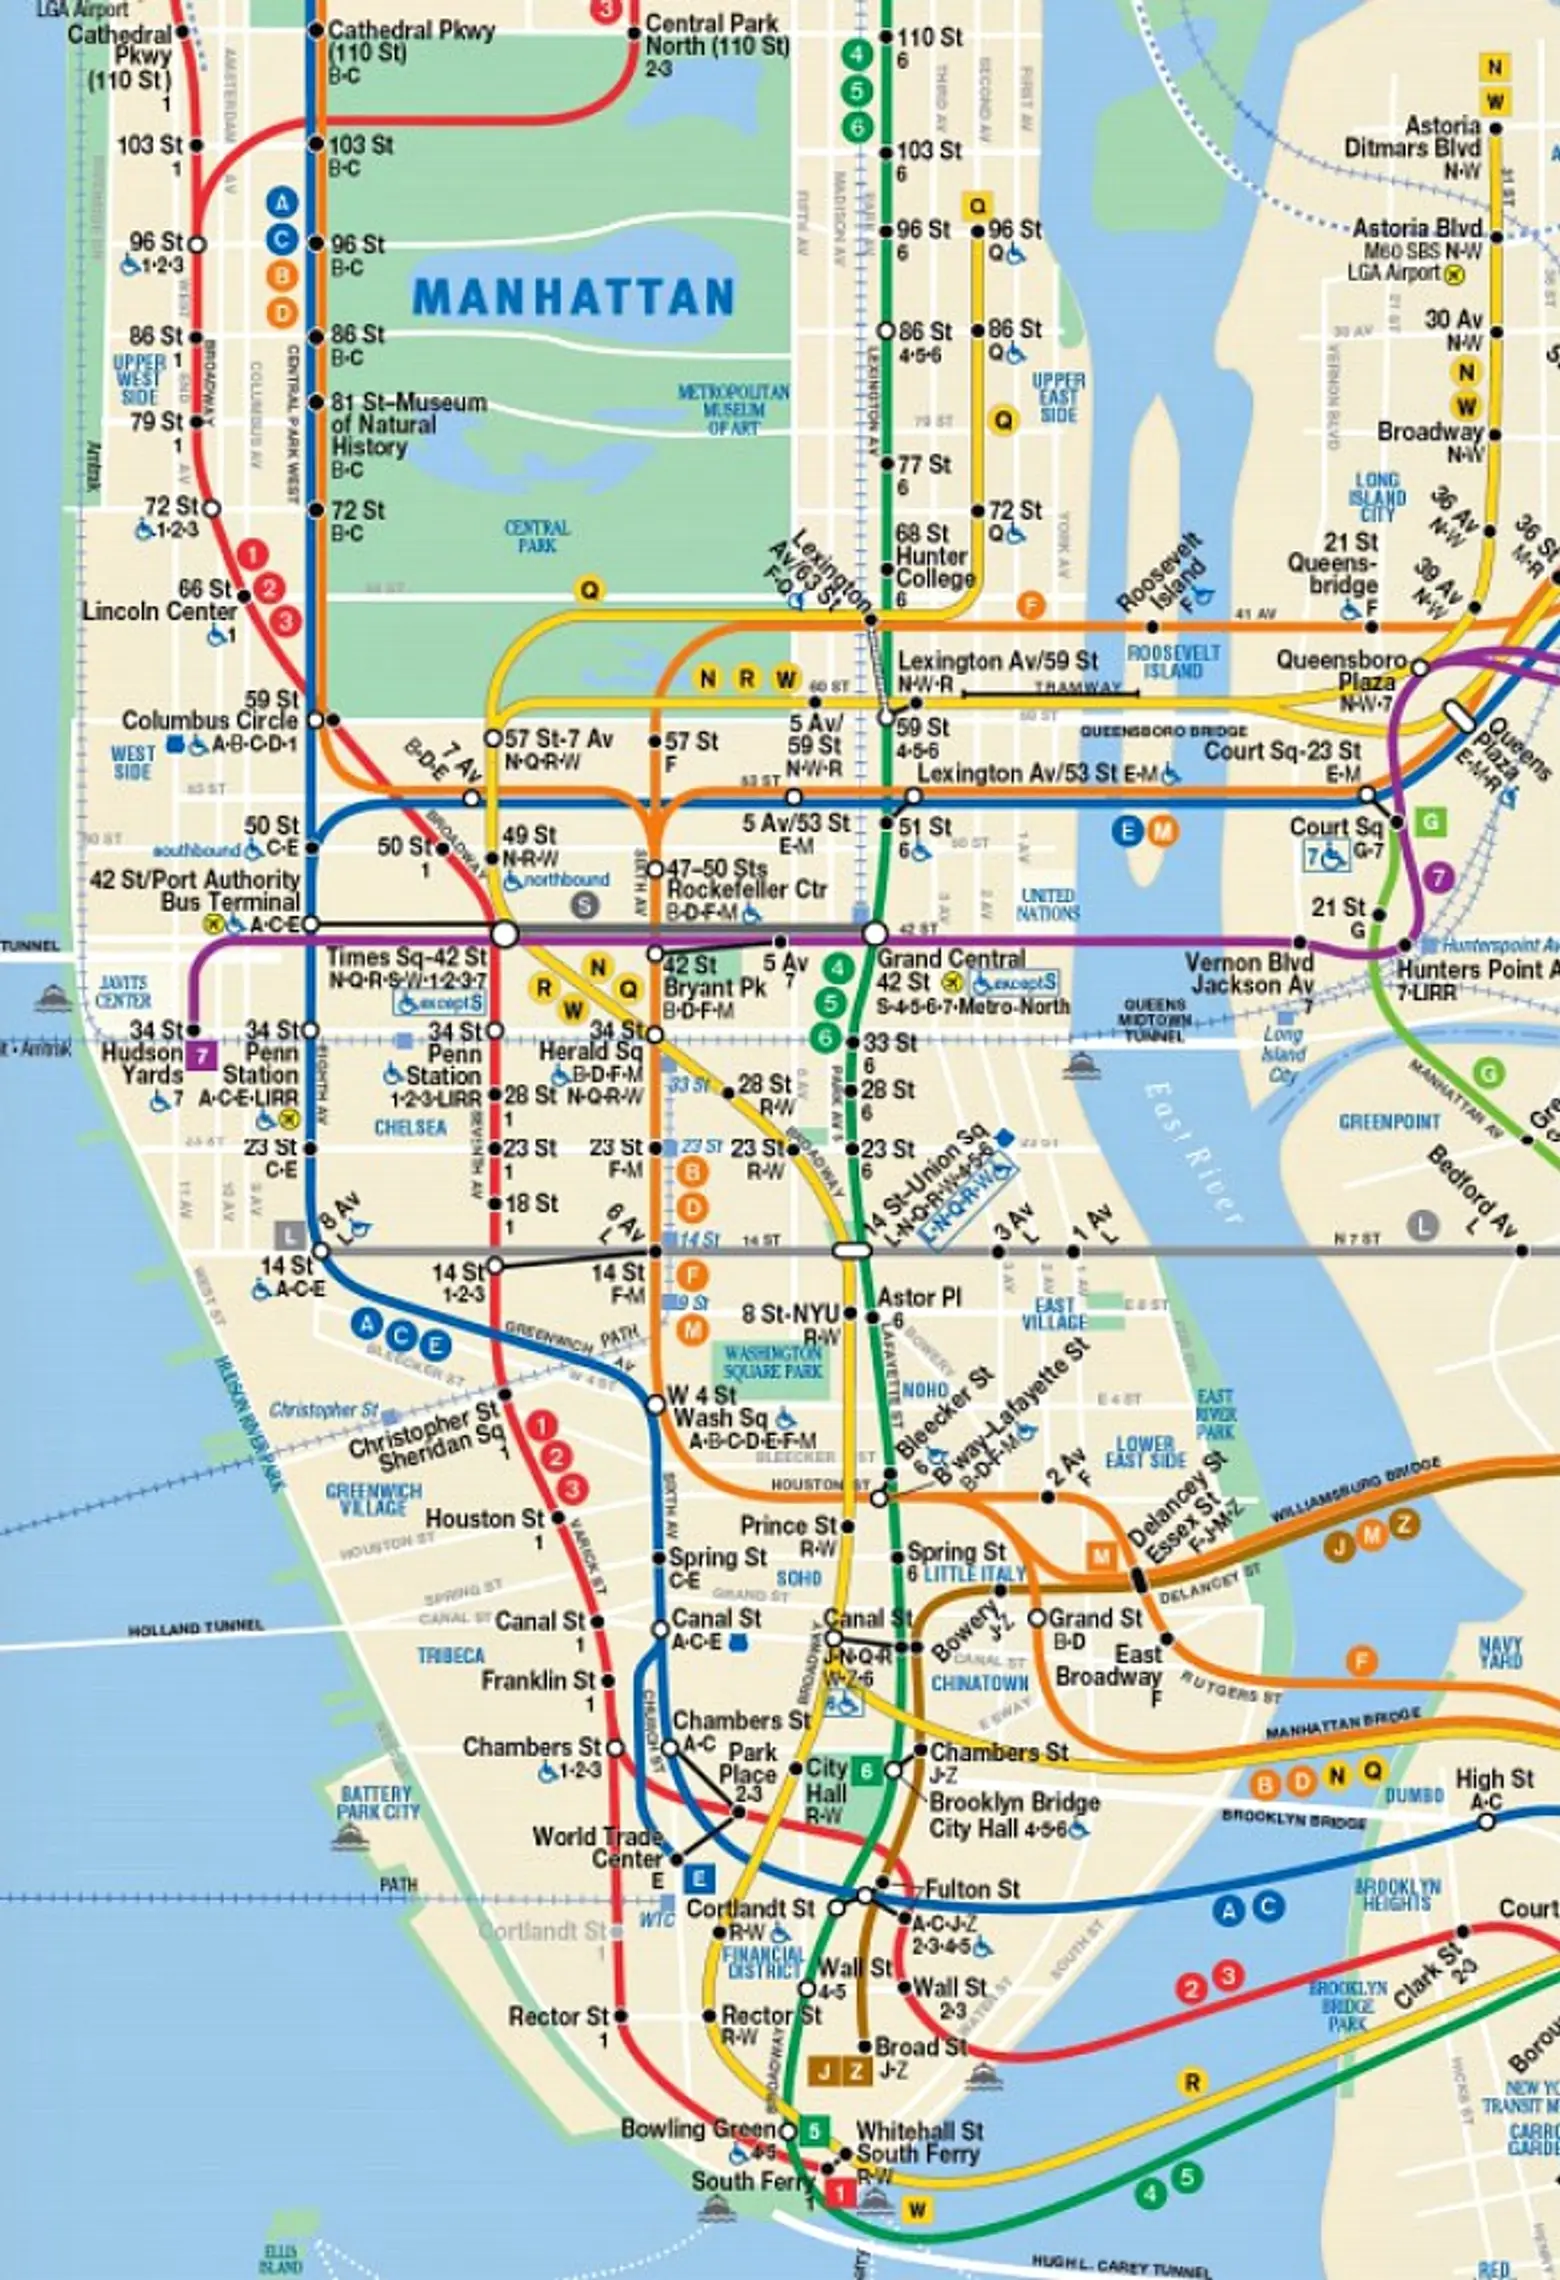 MTA-subway map-May 2016-2